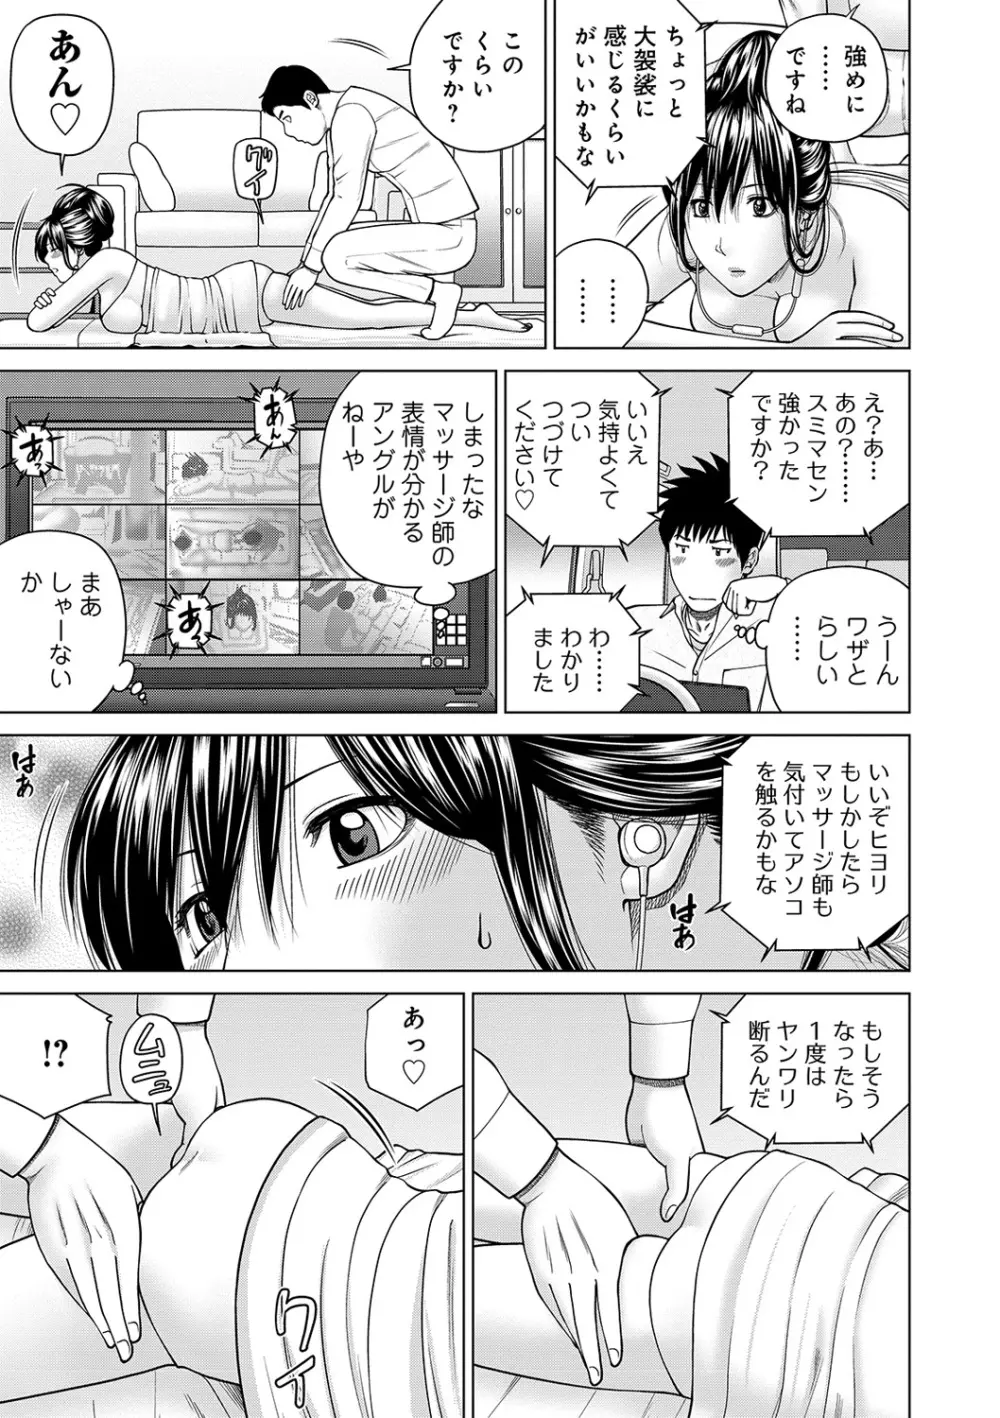 WEB版コミック激ヤバ! Vol.122 13ページ